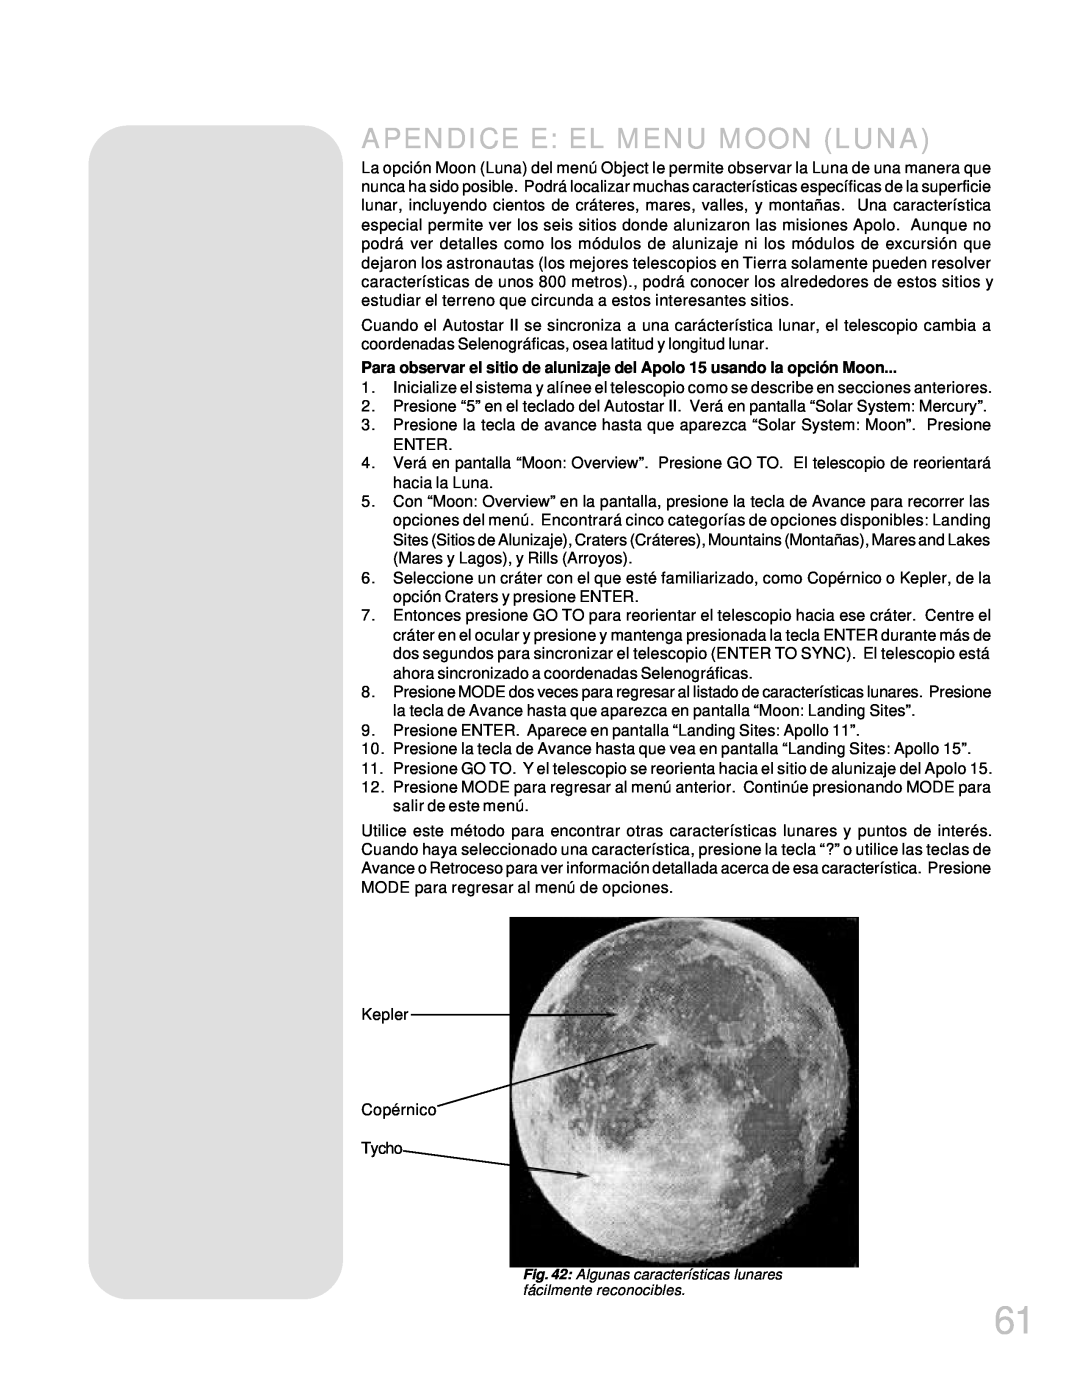 Meade LX200GPS manual Apendice E El Menu Moon Luna, Algunas características lunares fácilmente reconocibles 